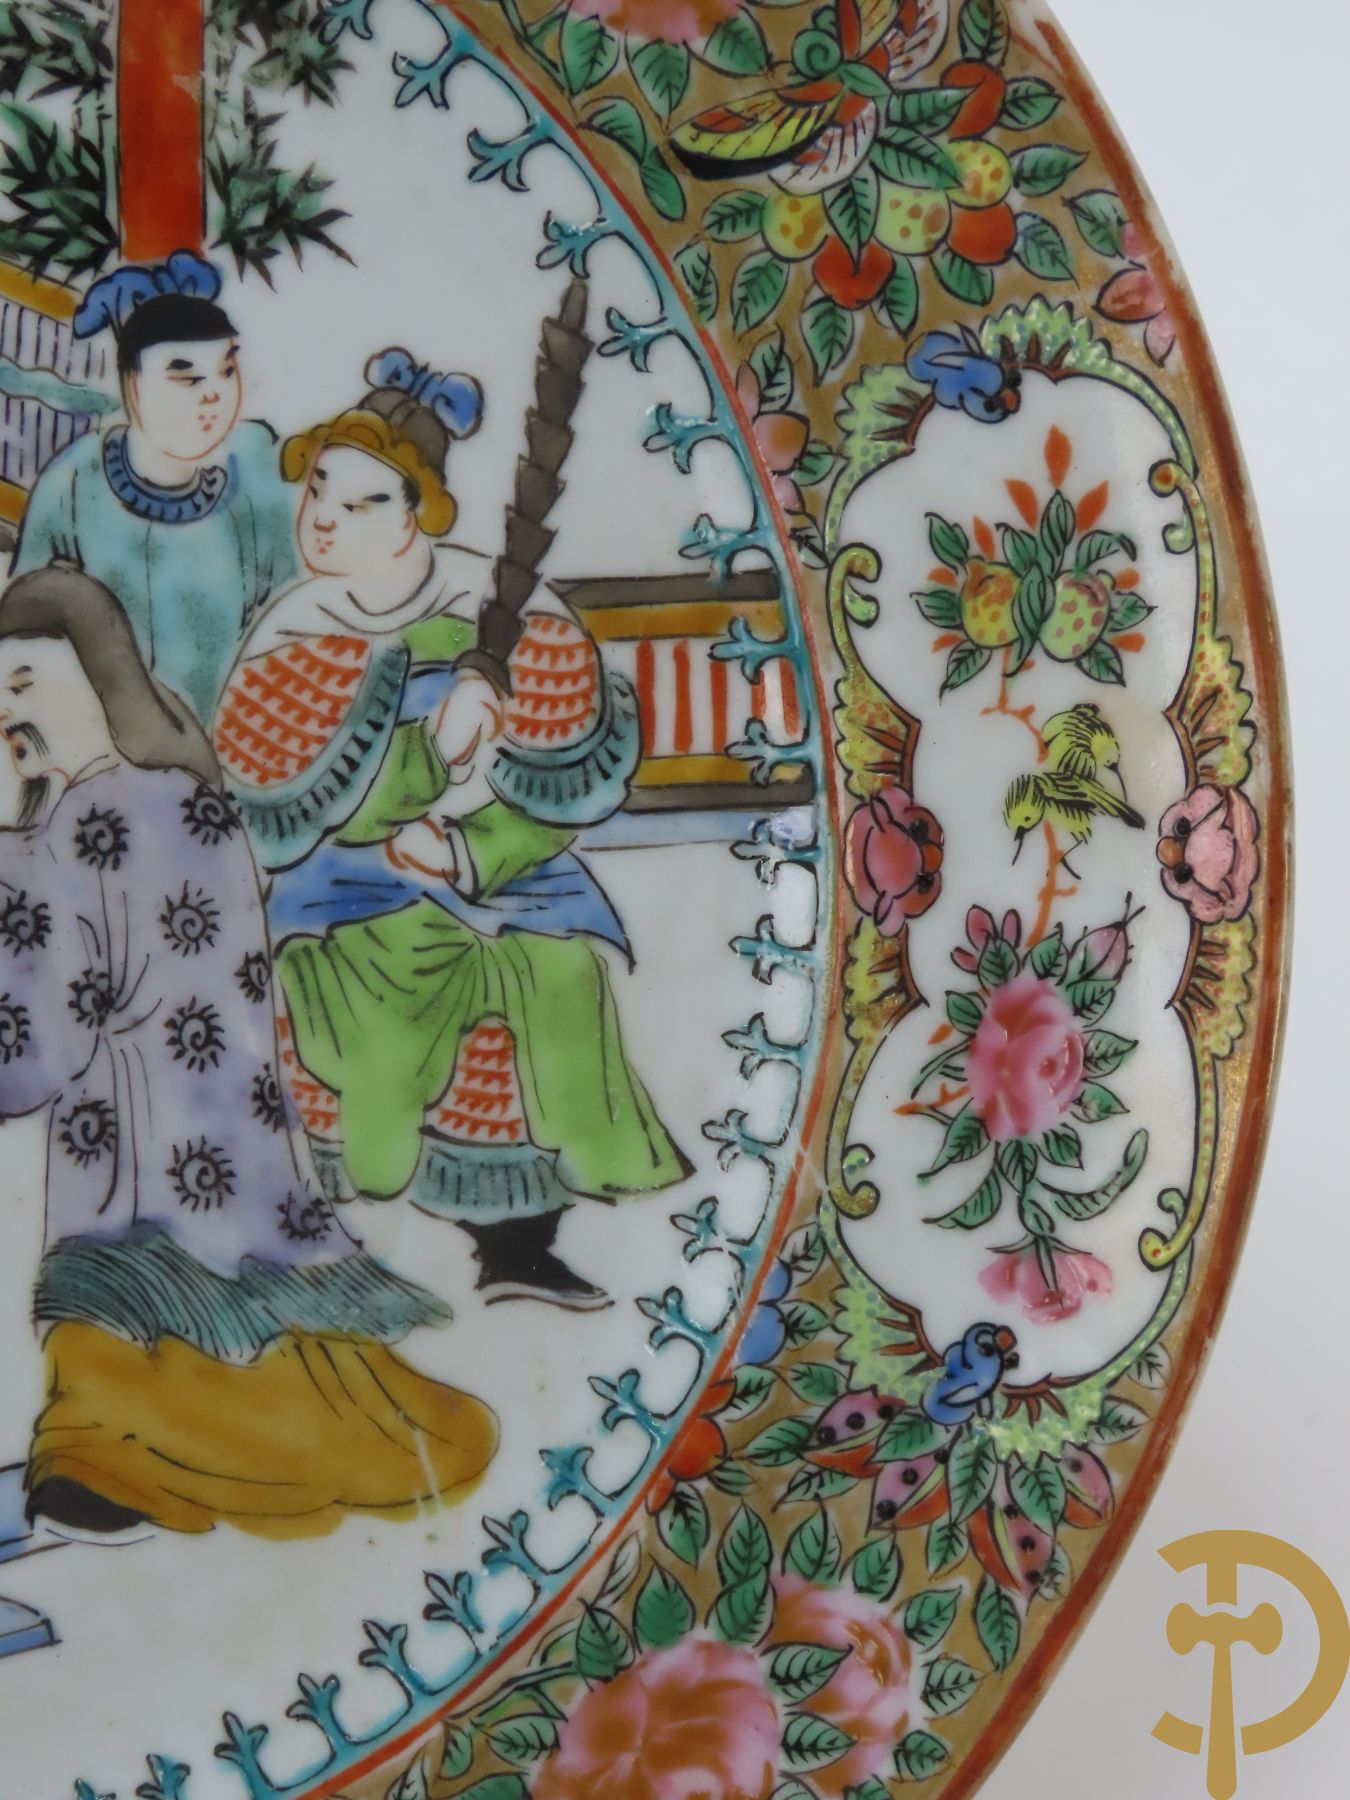 Twee Chinese porseleinen borden met vazendecor, bord met decor van landschap en krijgers en 1 met tempeldecor en wijsgeren